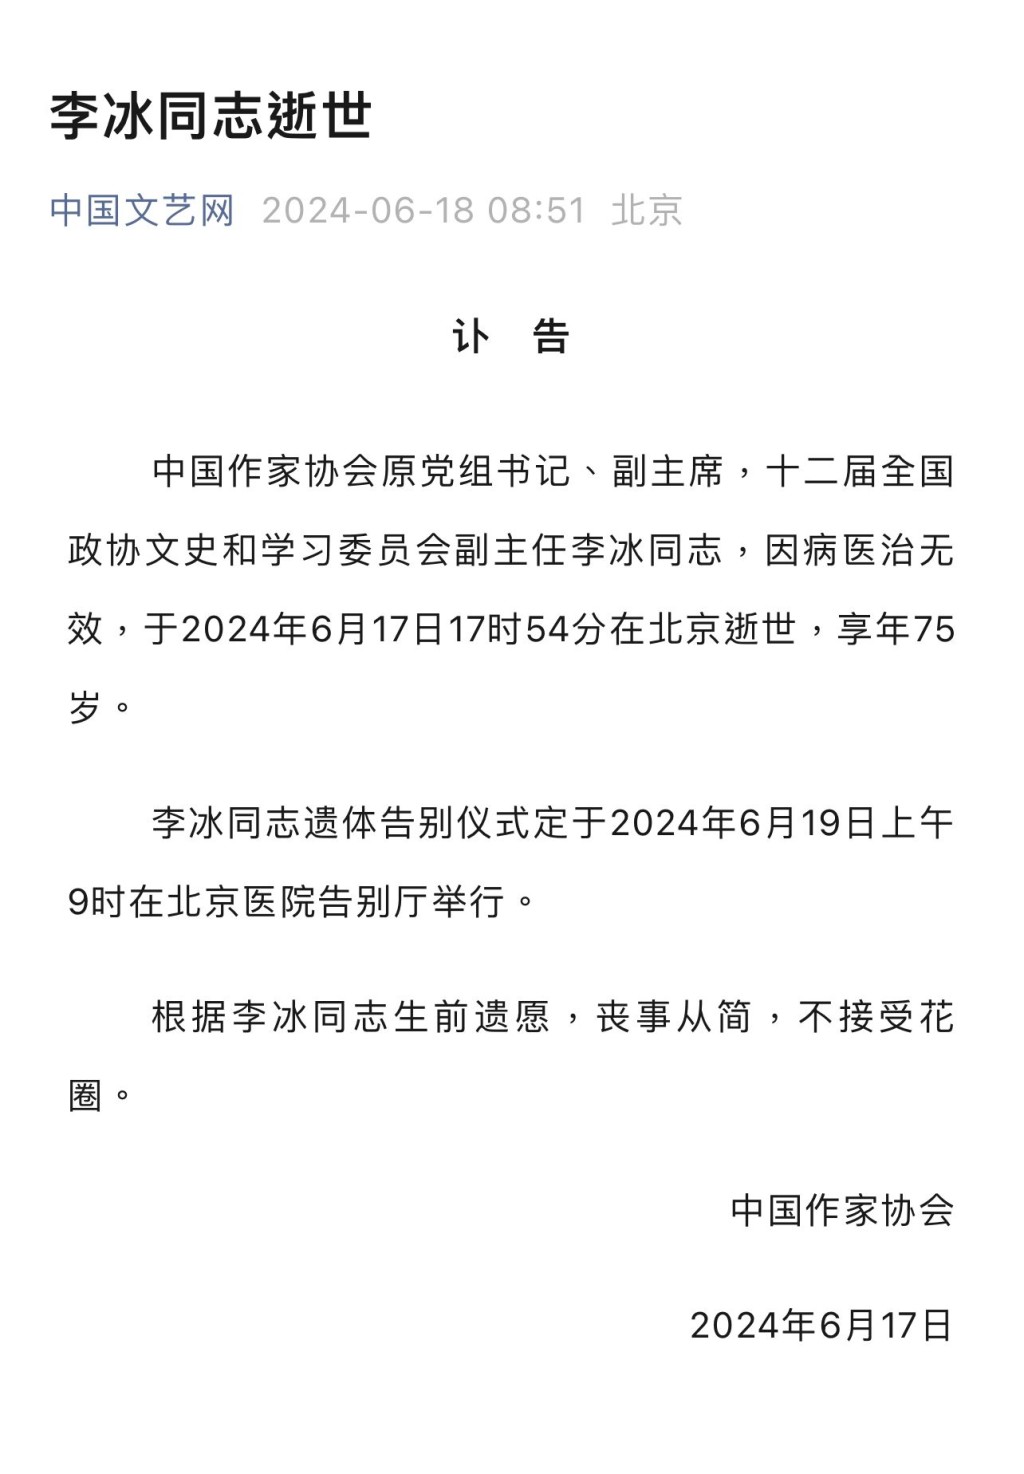 李冰遗体告别仪式定于6月19日上午9时在北京医院告别厅举行。